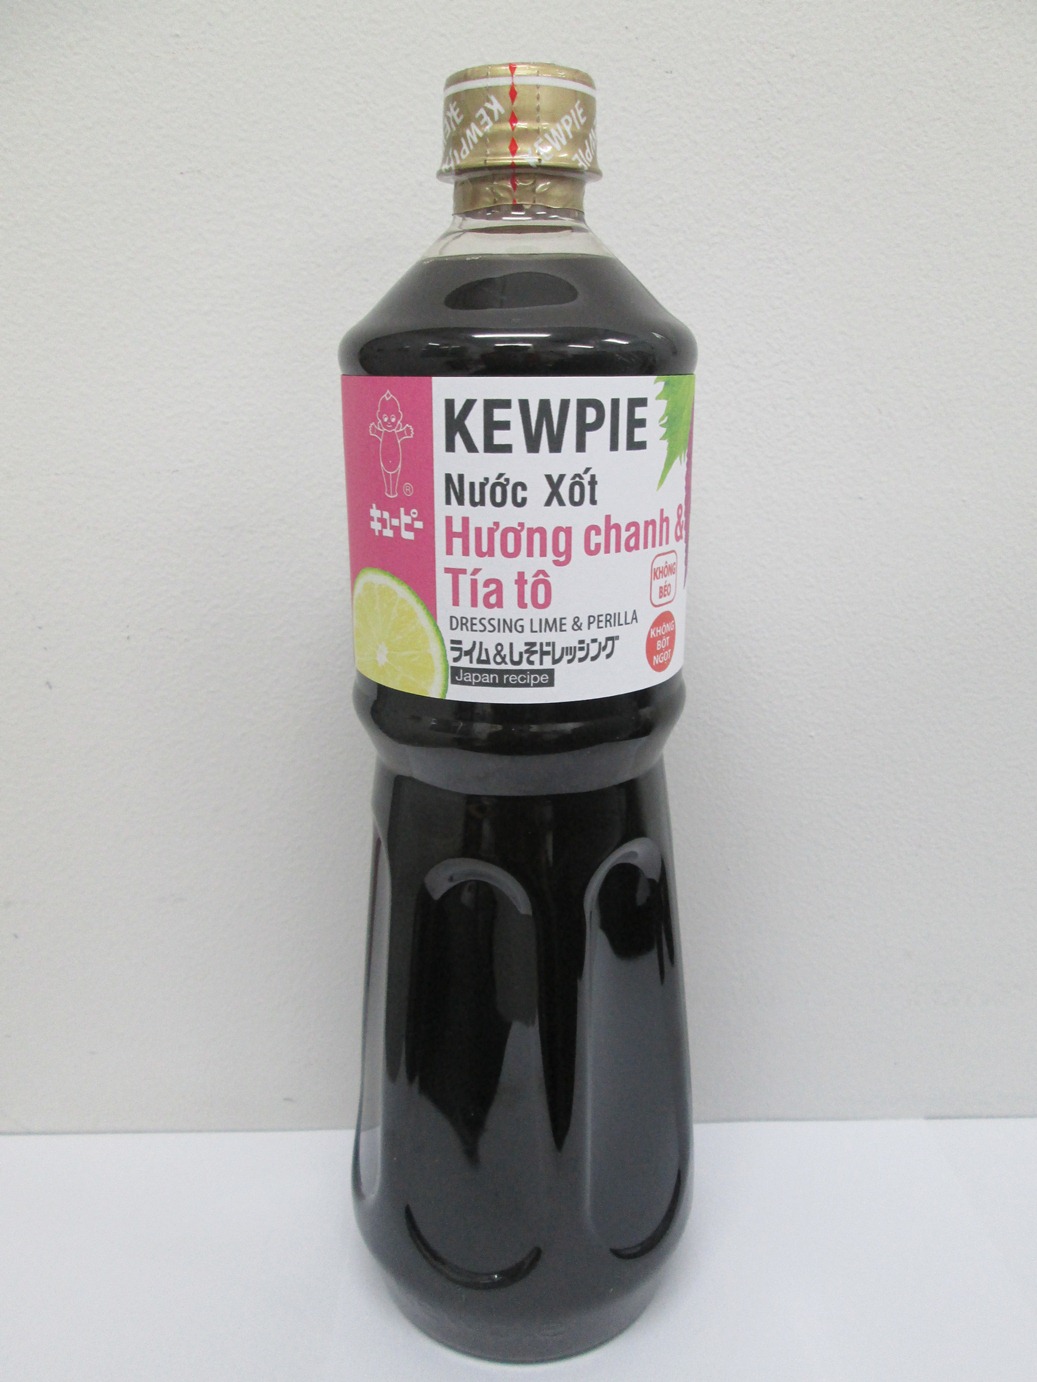 Nước Sốt hương chanh & tía tô Kewpie